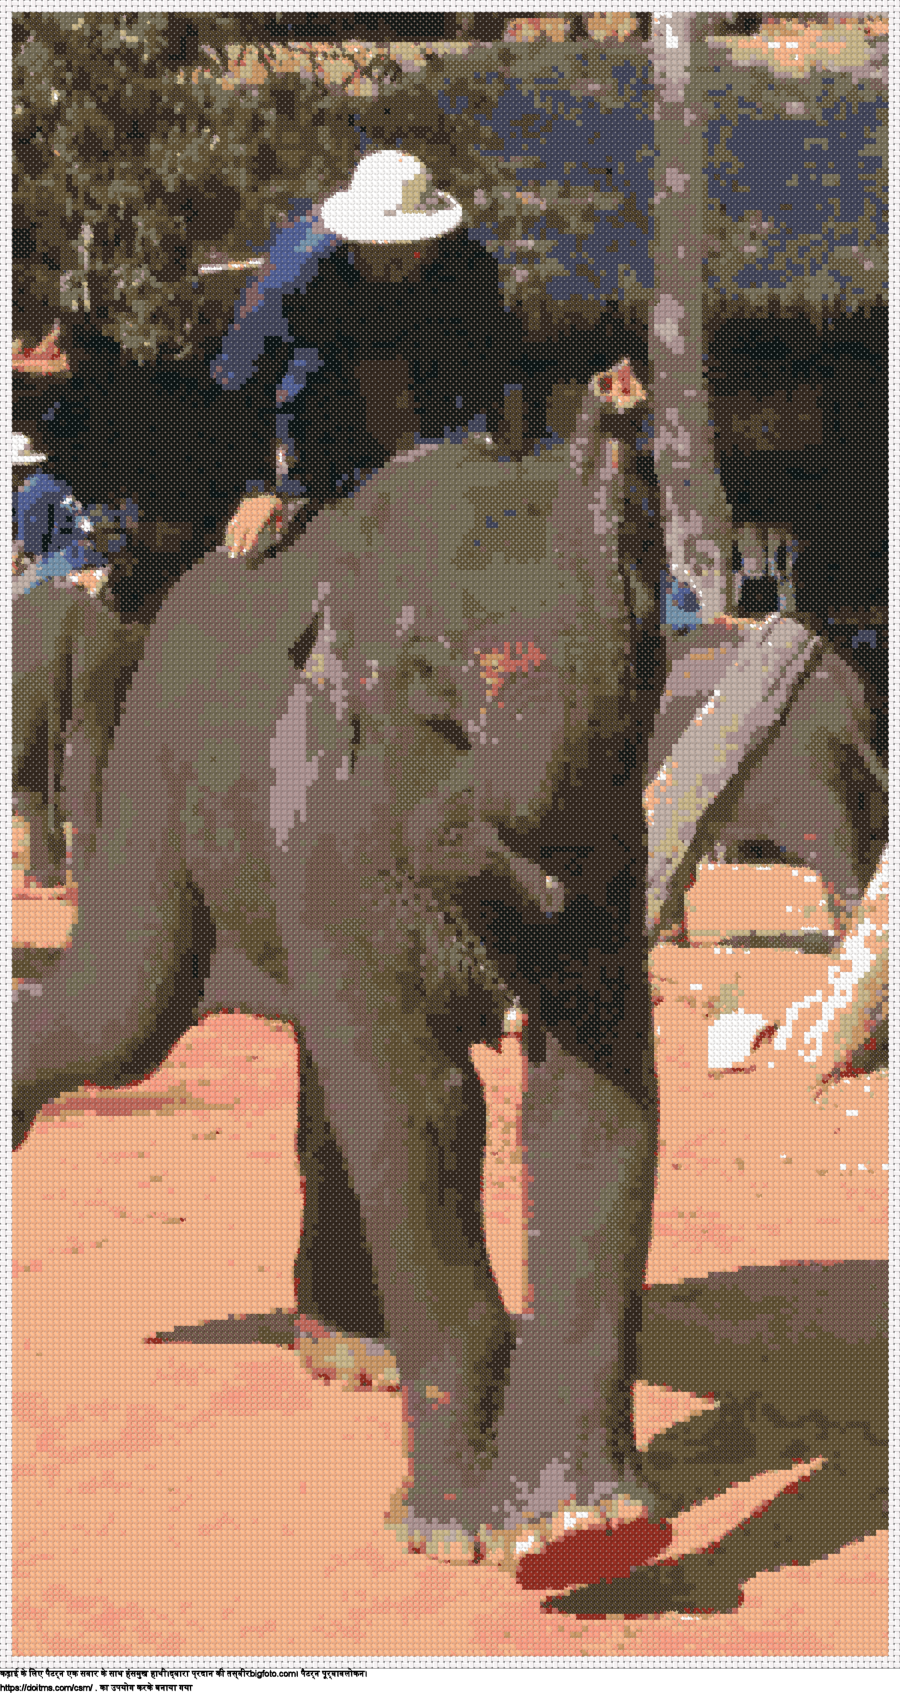 एक सवार के साथ हंसमुख हाथी